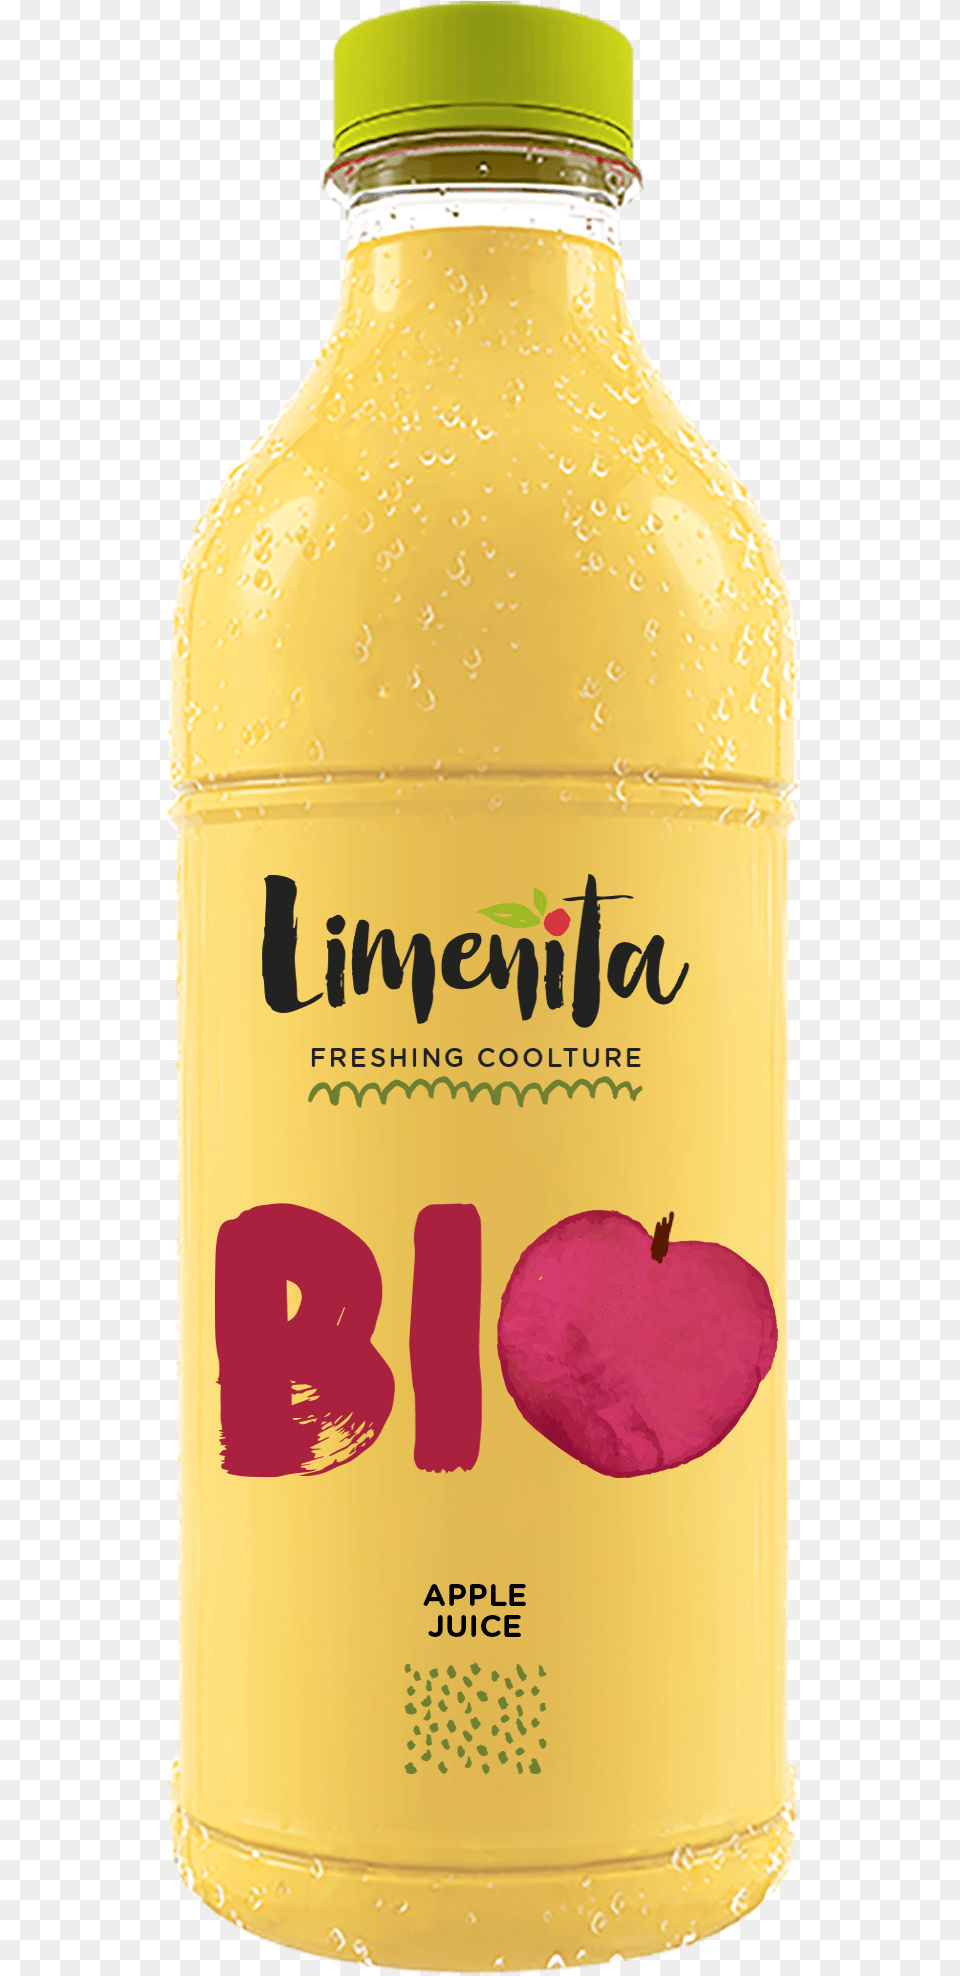 Bio Apple Juice Glass Bottle, Beverage, Shaker Png Image